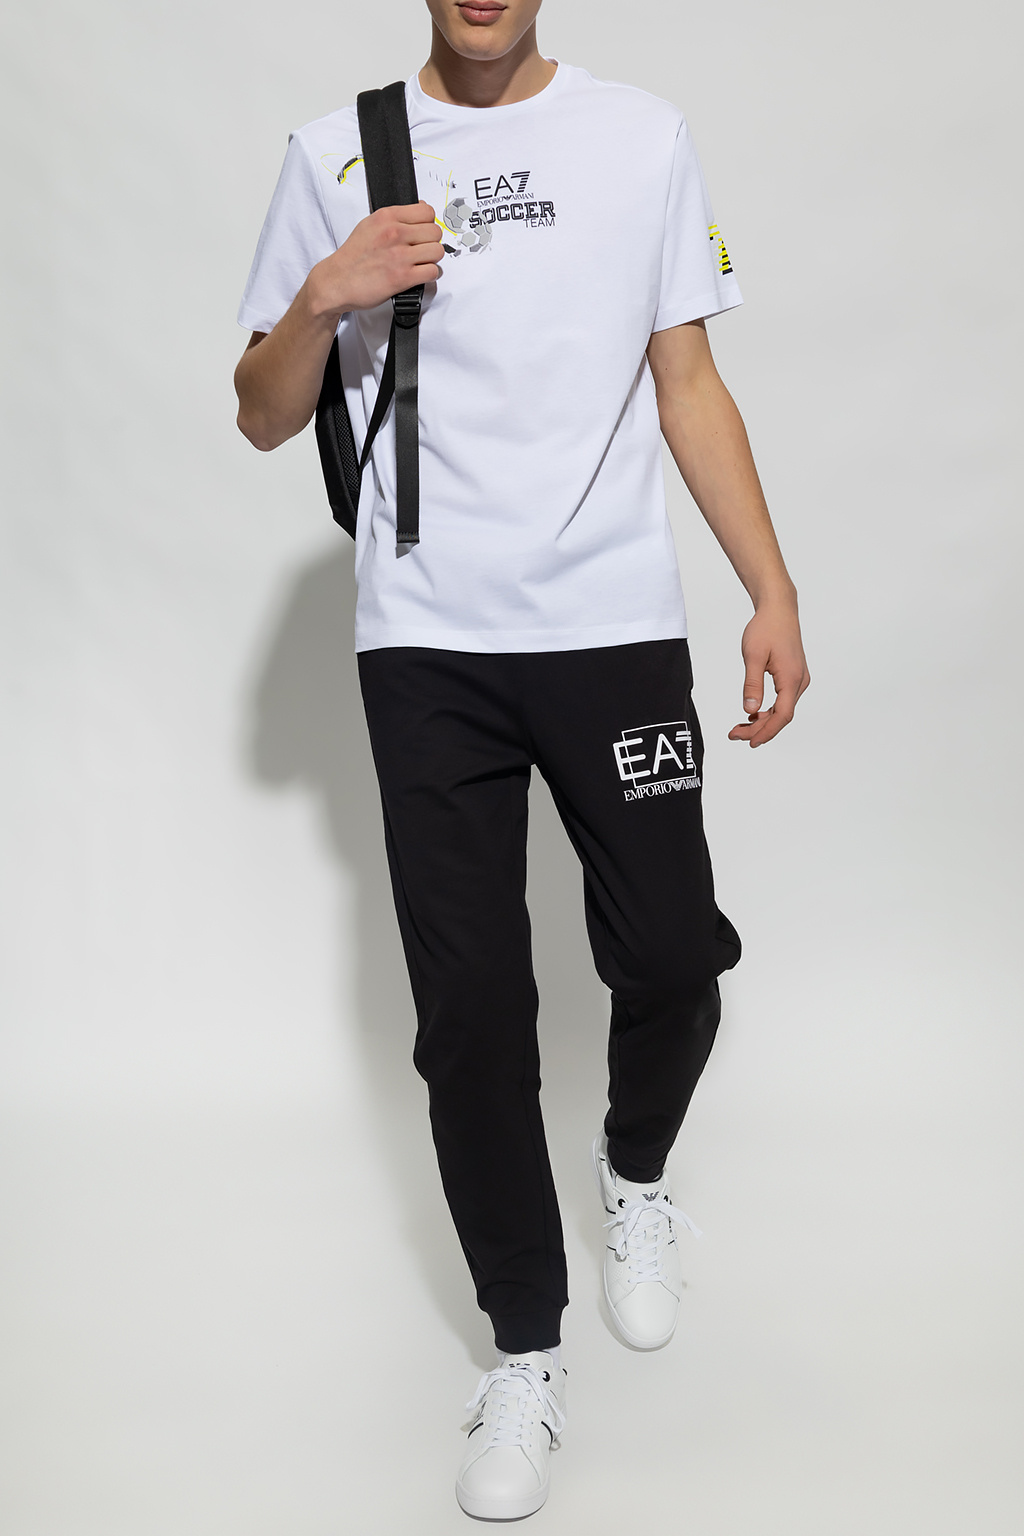 EA7 Emporio Armani Emporio Armani long-sleeve button-up shirt